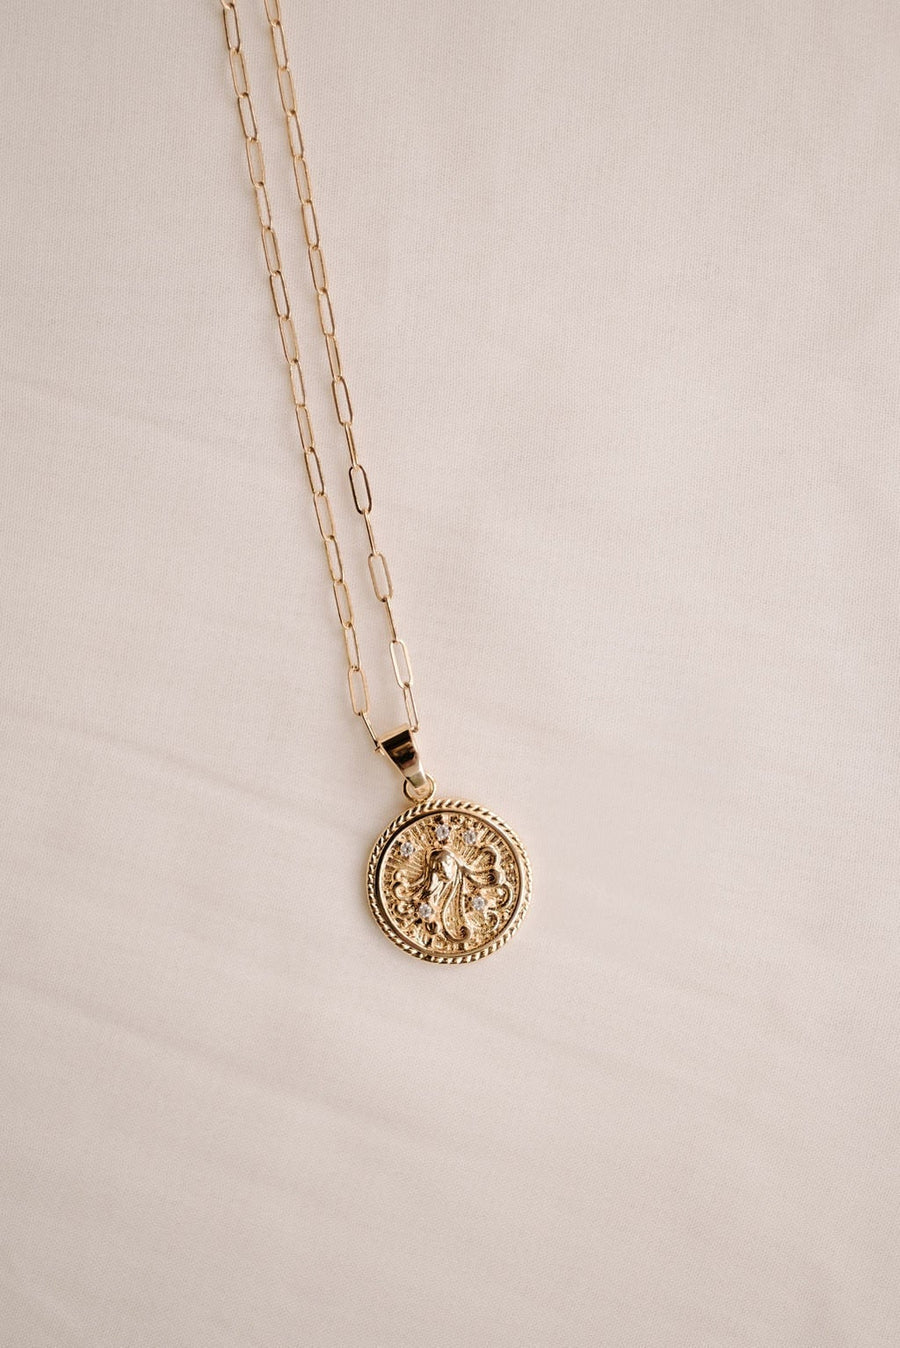 Zodiac Necklace, Zodiac Jewelry,  Zodiac Sign, Handmade Jewelry, Coin Pendant, Link Chain, Custom Jewelry, Christmas Gift, Birthday Gift